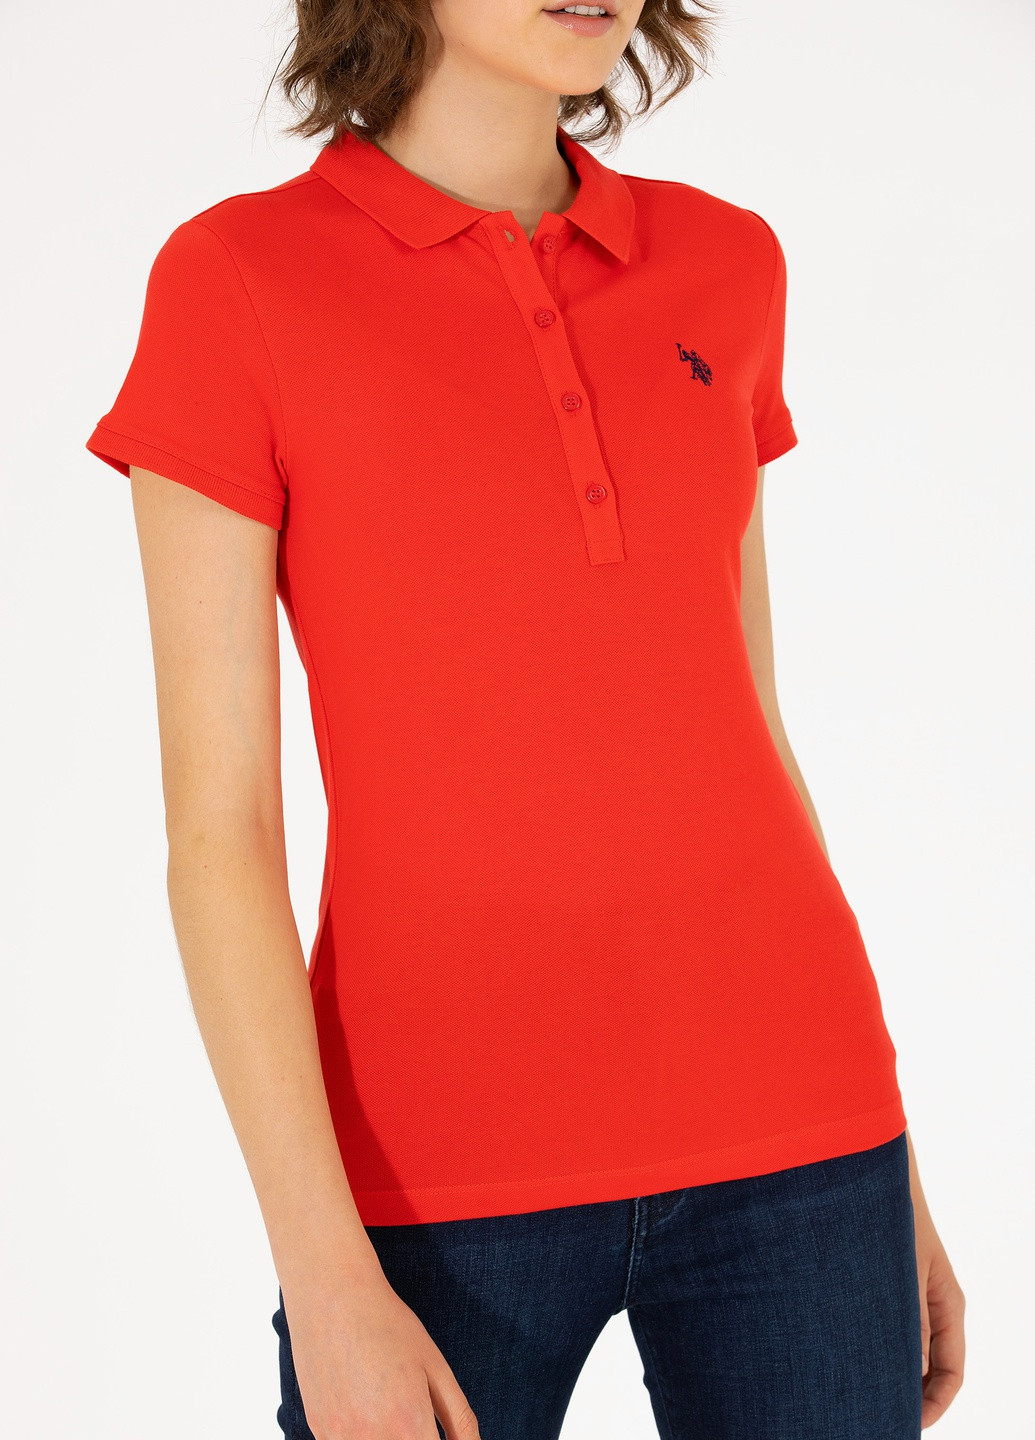 Красная женская футболка-футболка u.s.polo assn женская U.S. Polo Assn.